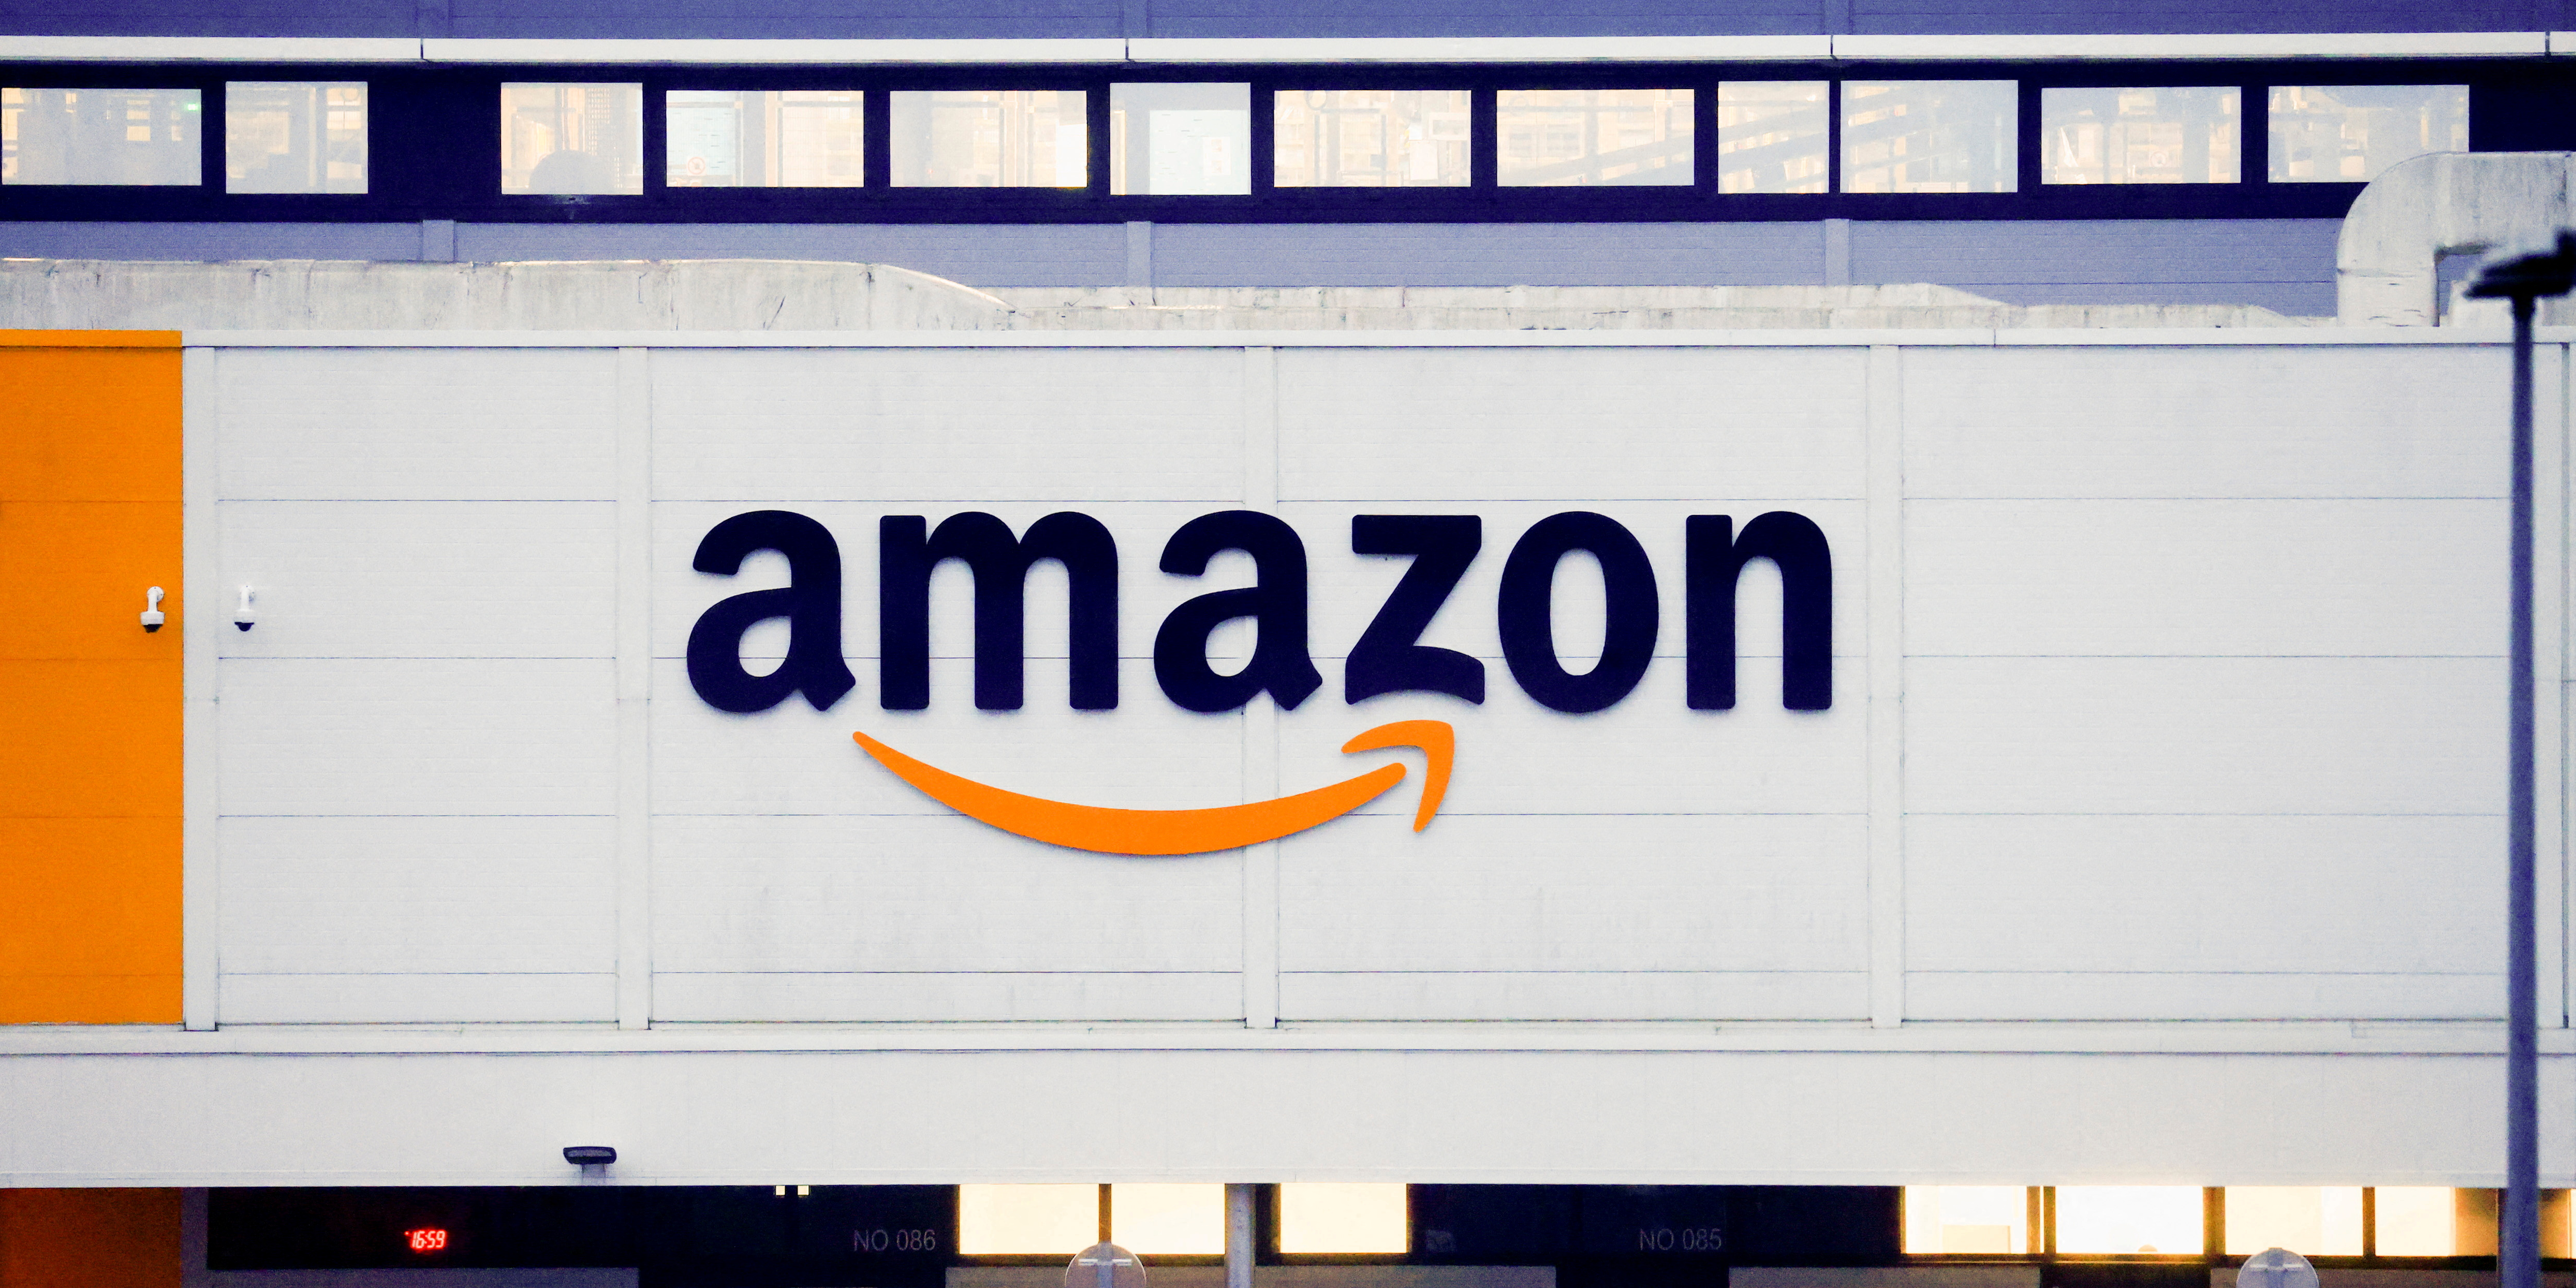 Amazon France: un seul syndicat signe l'accord proposant une hausse de 3,5% des salaires